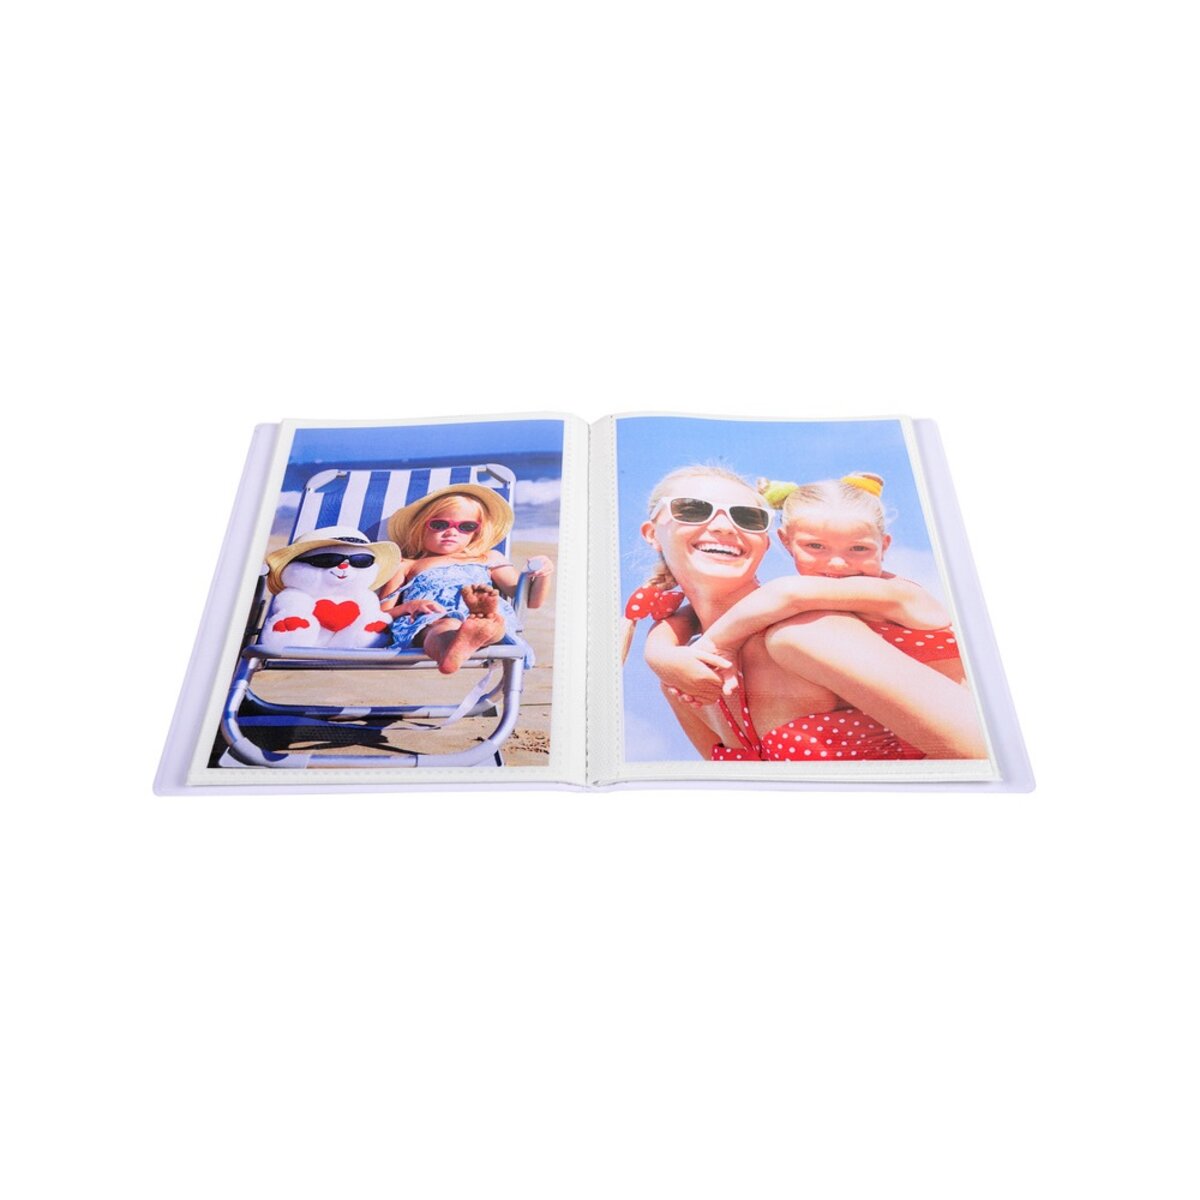 Autocollant Collecte Album Stockage Livre Poche 105x148mm/4x5.8inch 